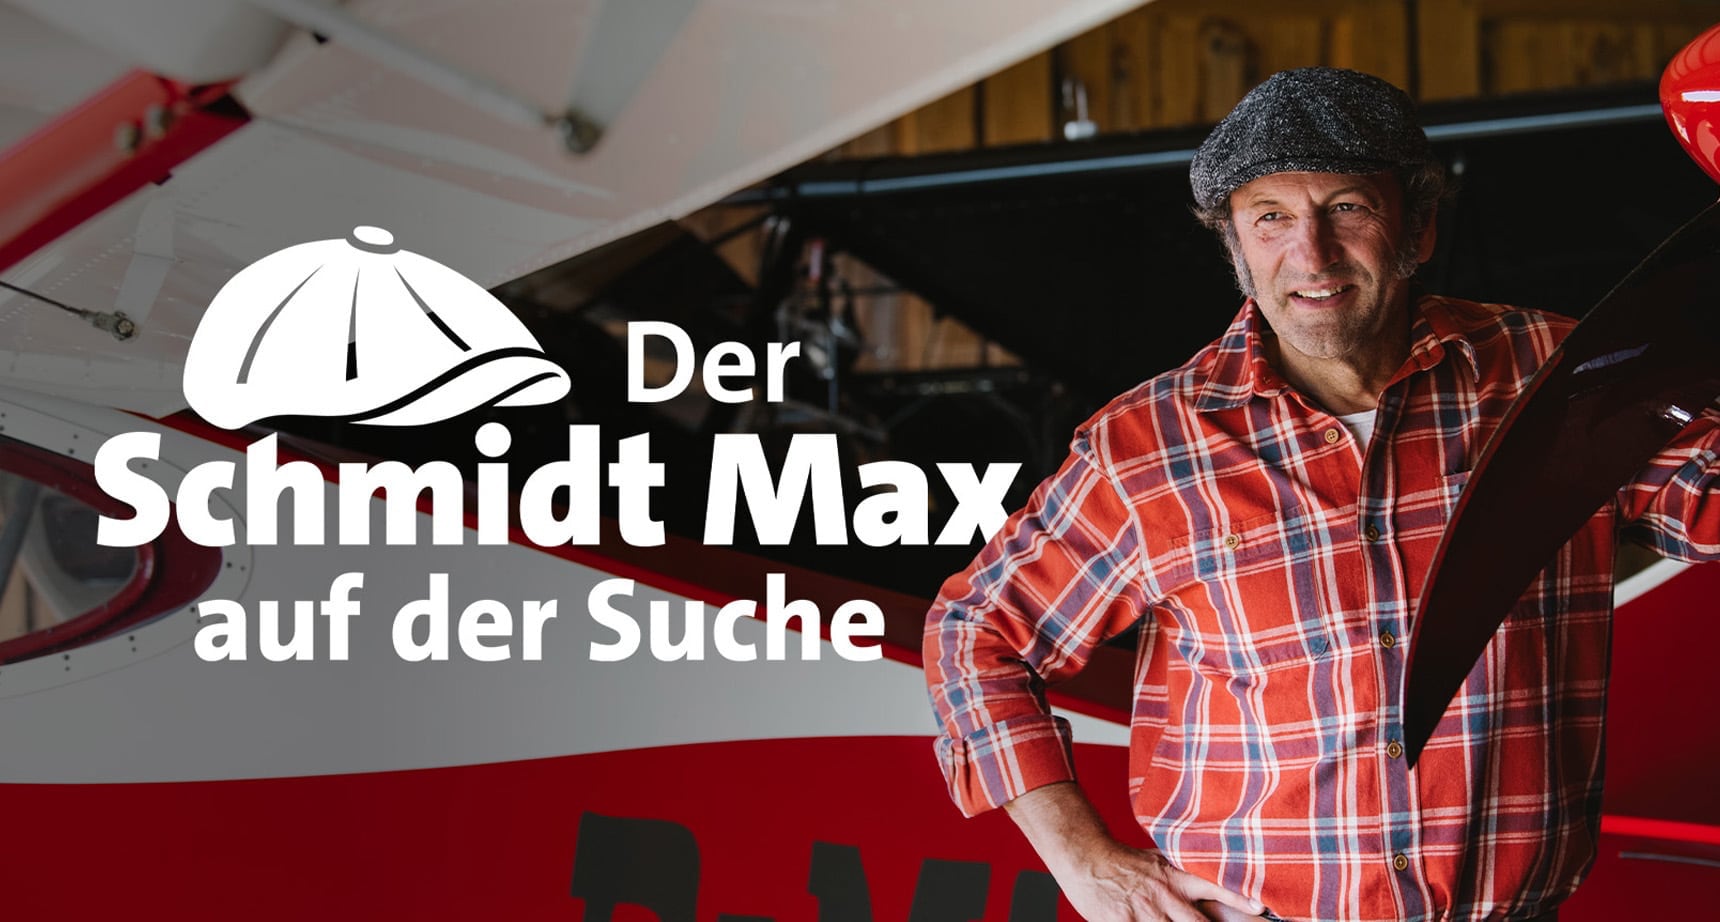 South & Browse Filmproduktion - Der Schmidt Max auf der Suche